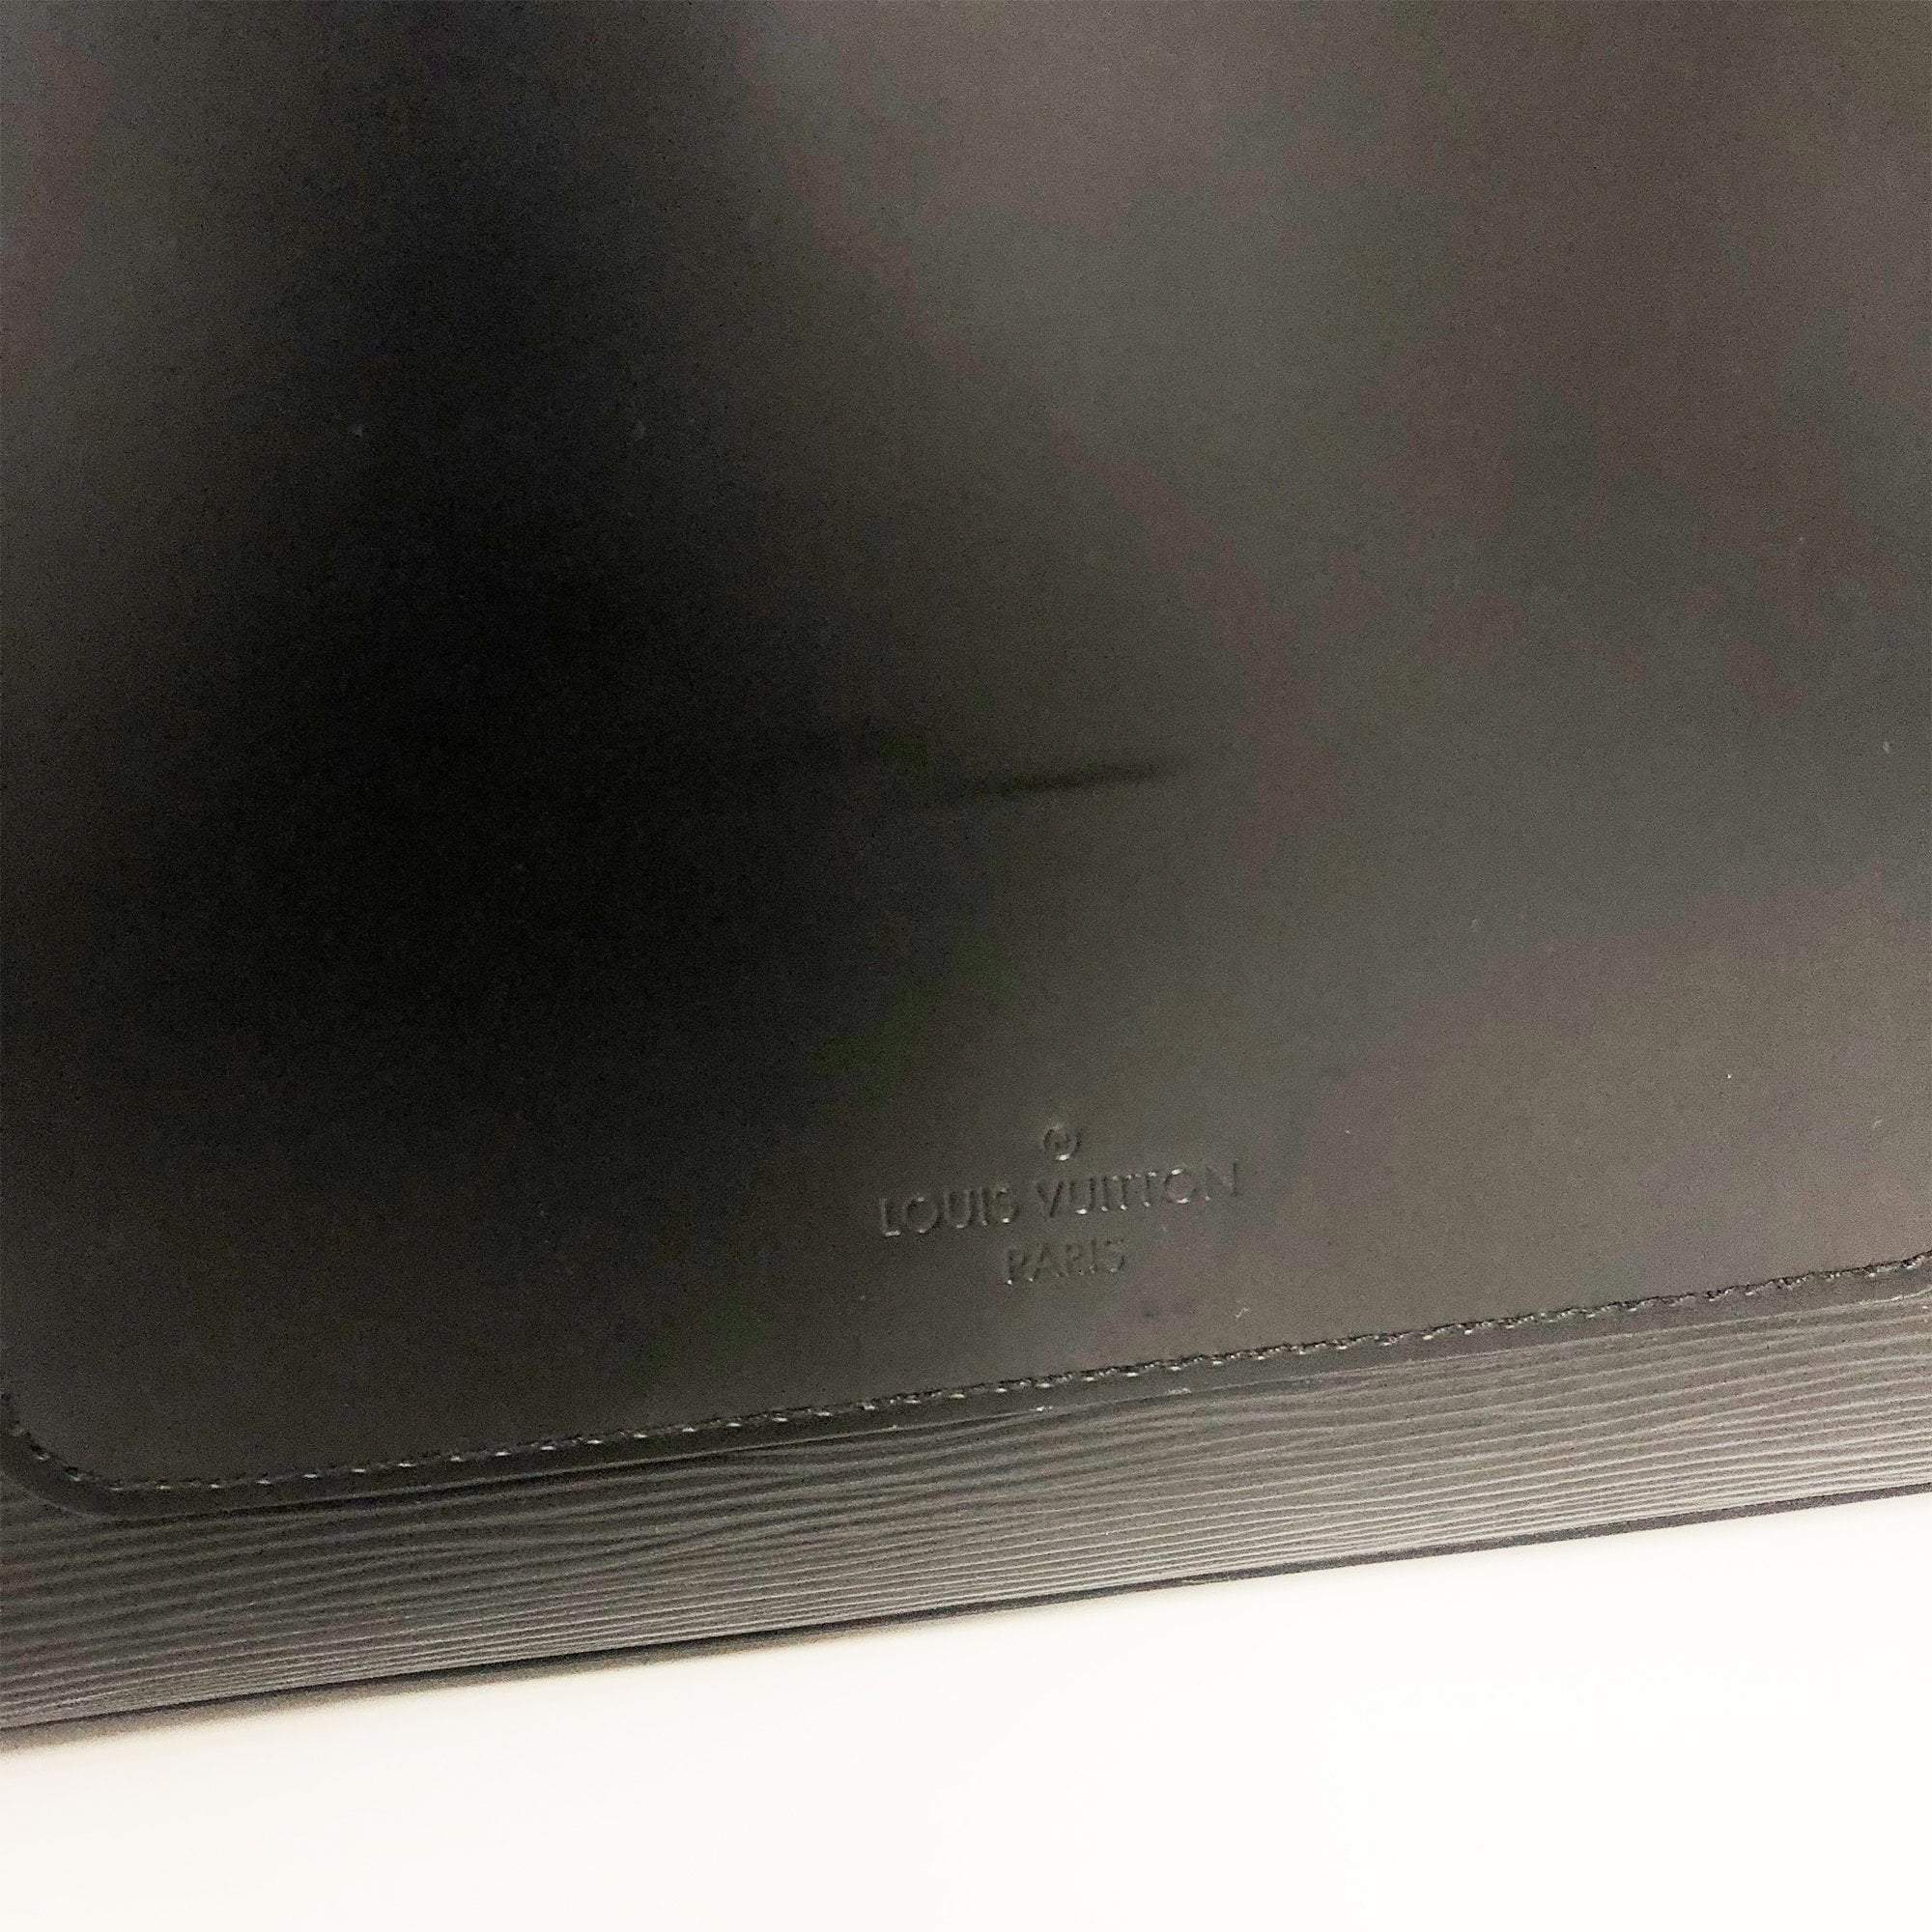 Louis Vuitton Kleber PM Epi Noir Hand Bag – Garderobe